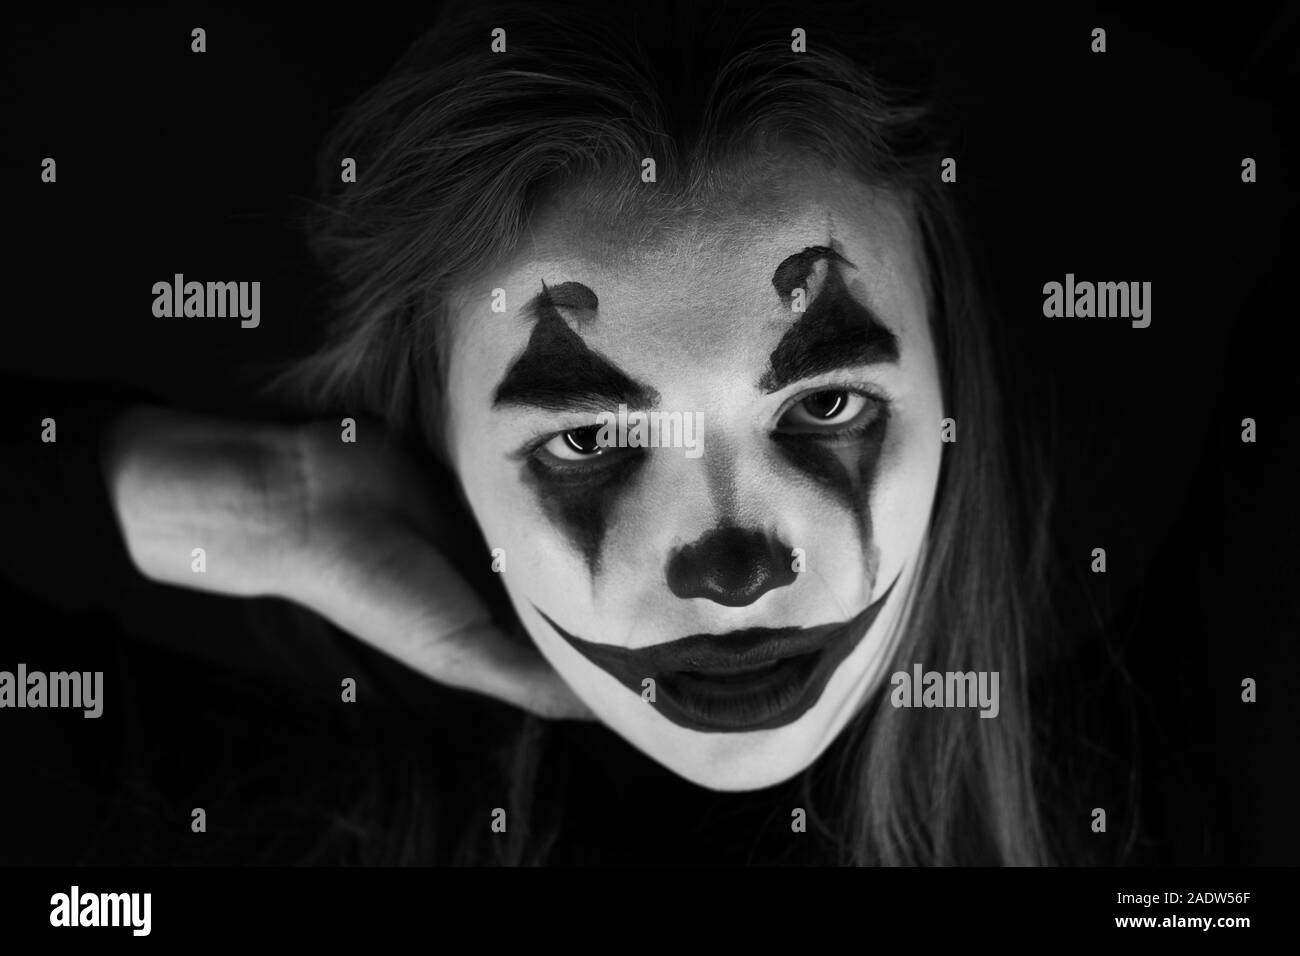 Maquillaje de payaso Imágenes de stock en blanco y negro - Alamy